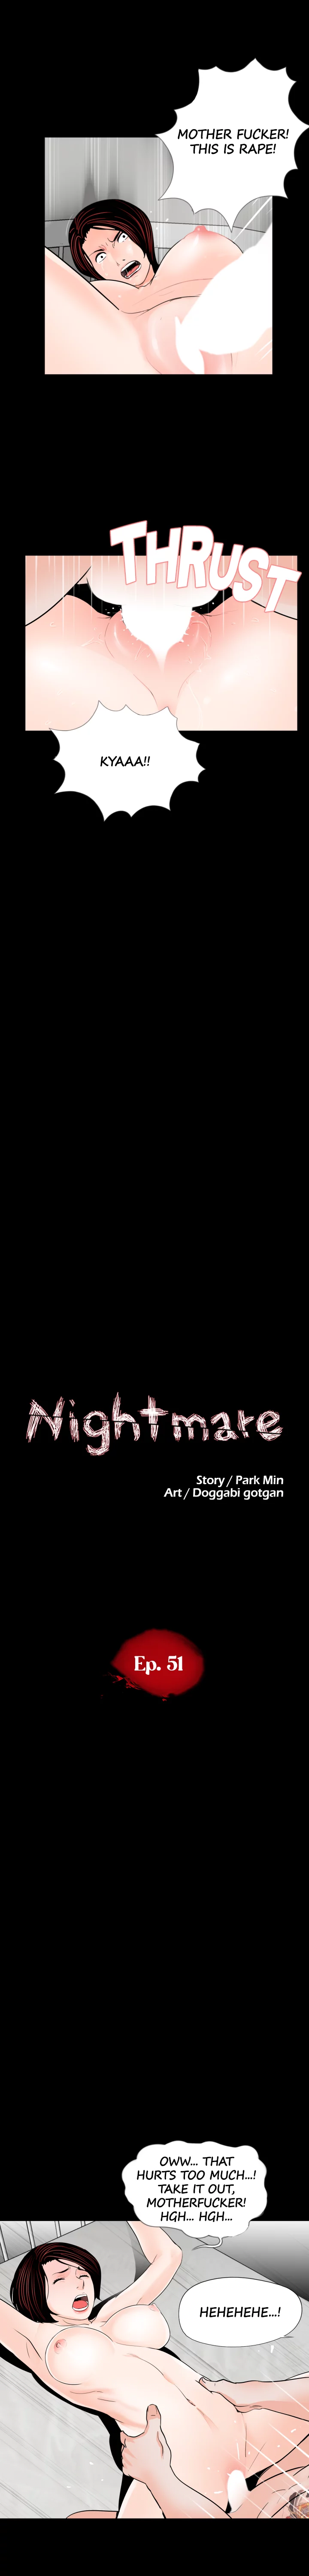 Nightmare image